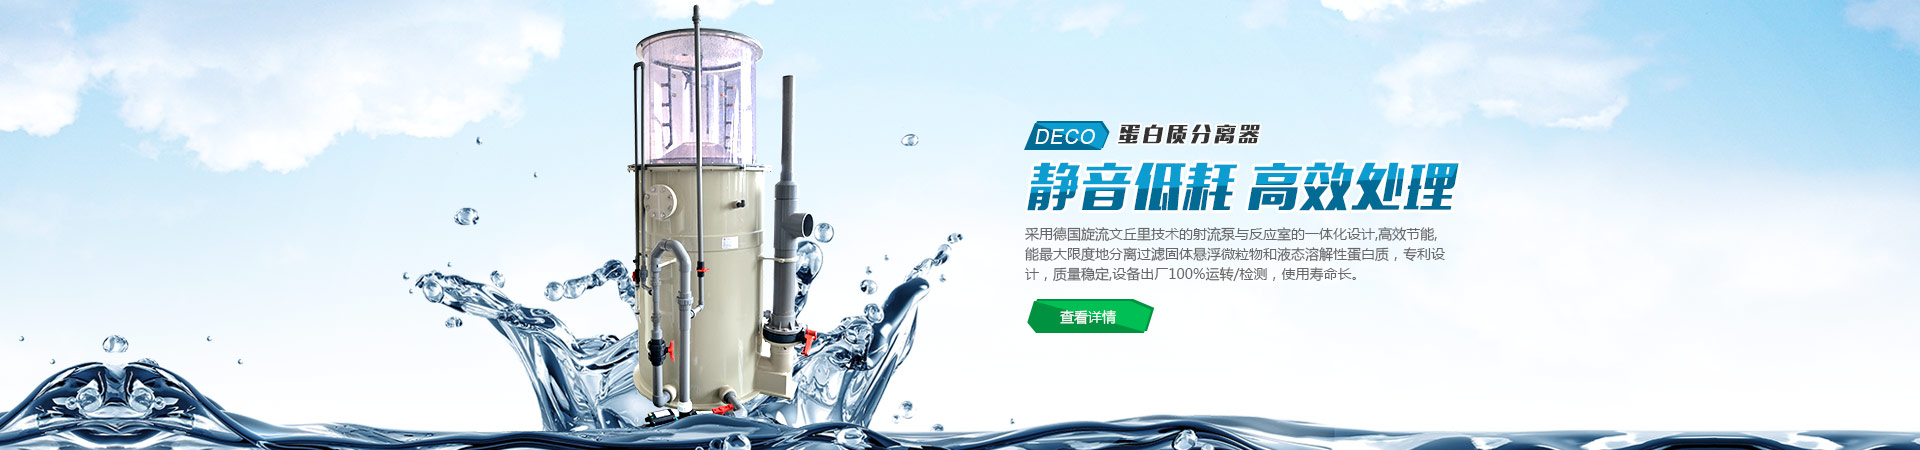 深圳超威自动化焊接装备有限公司
